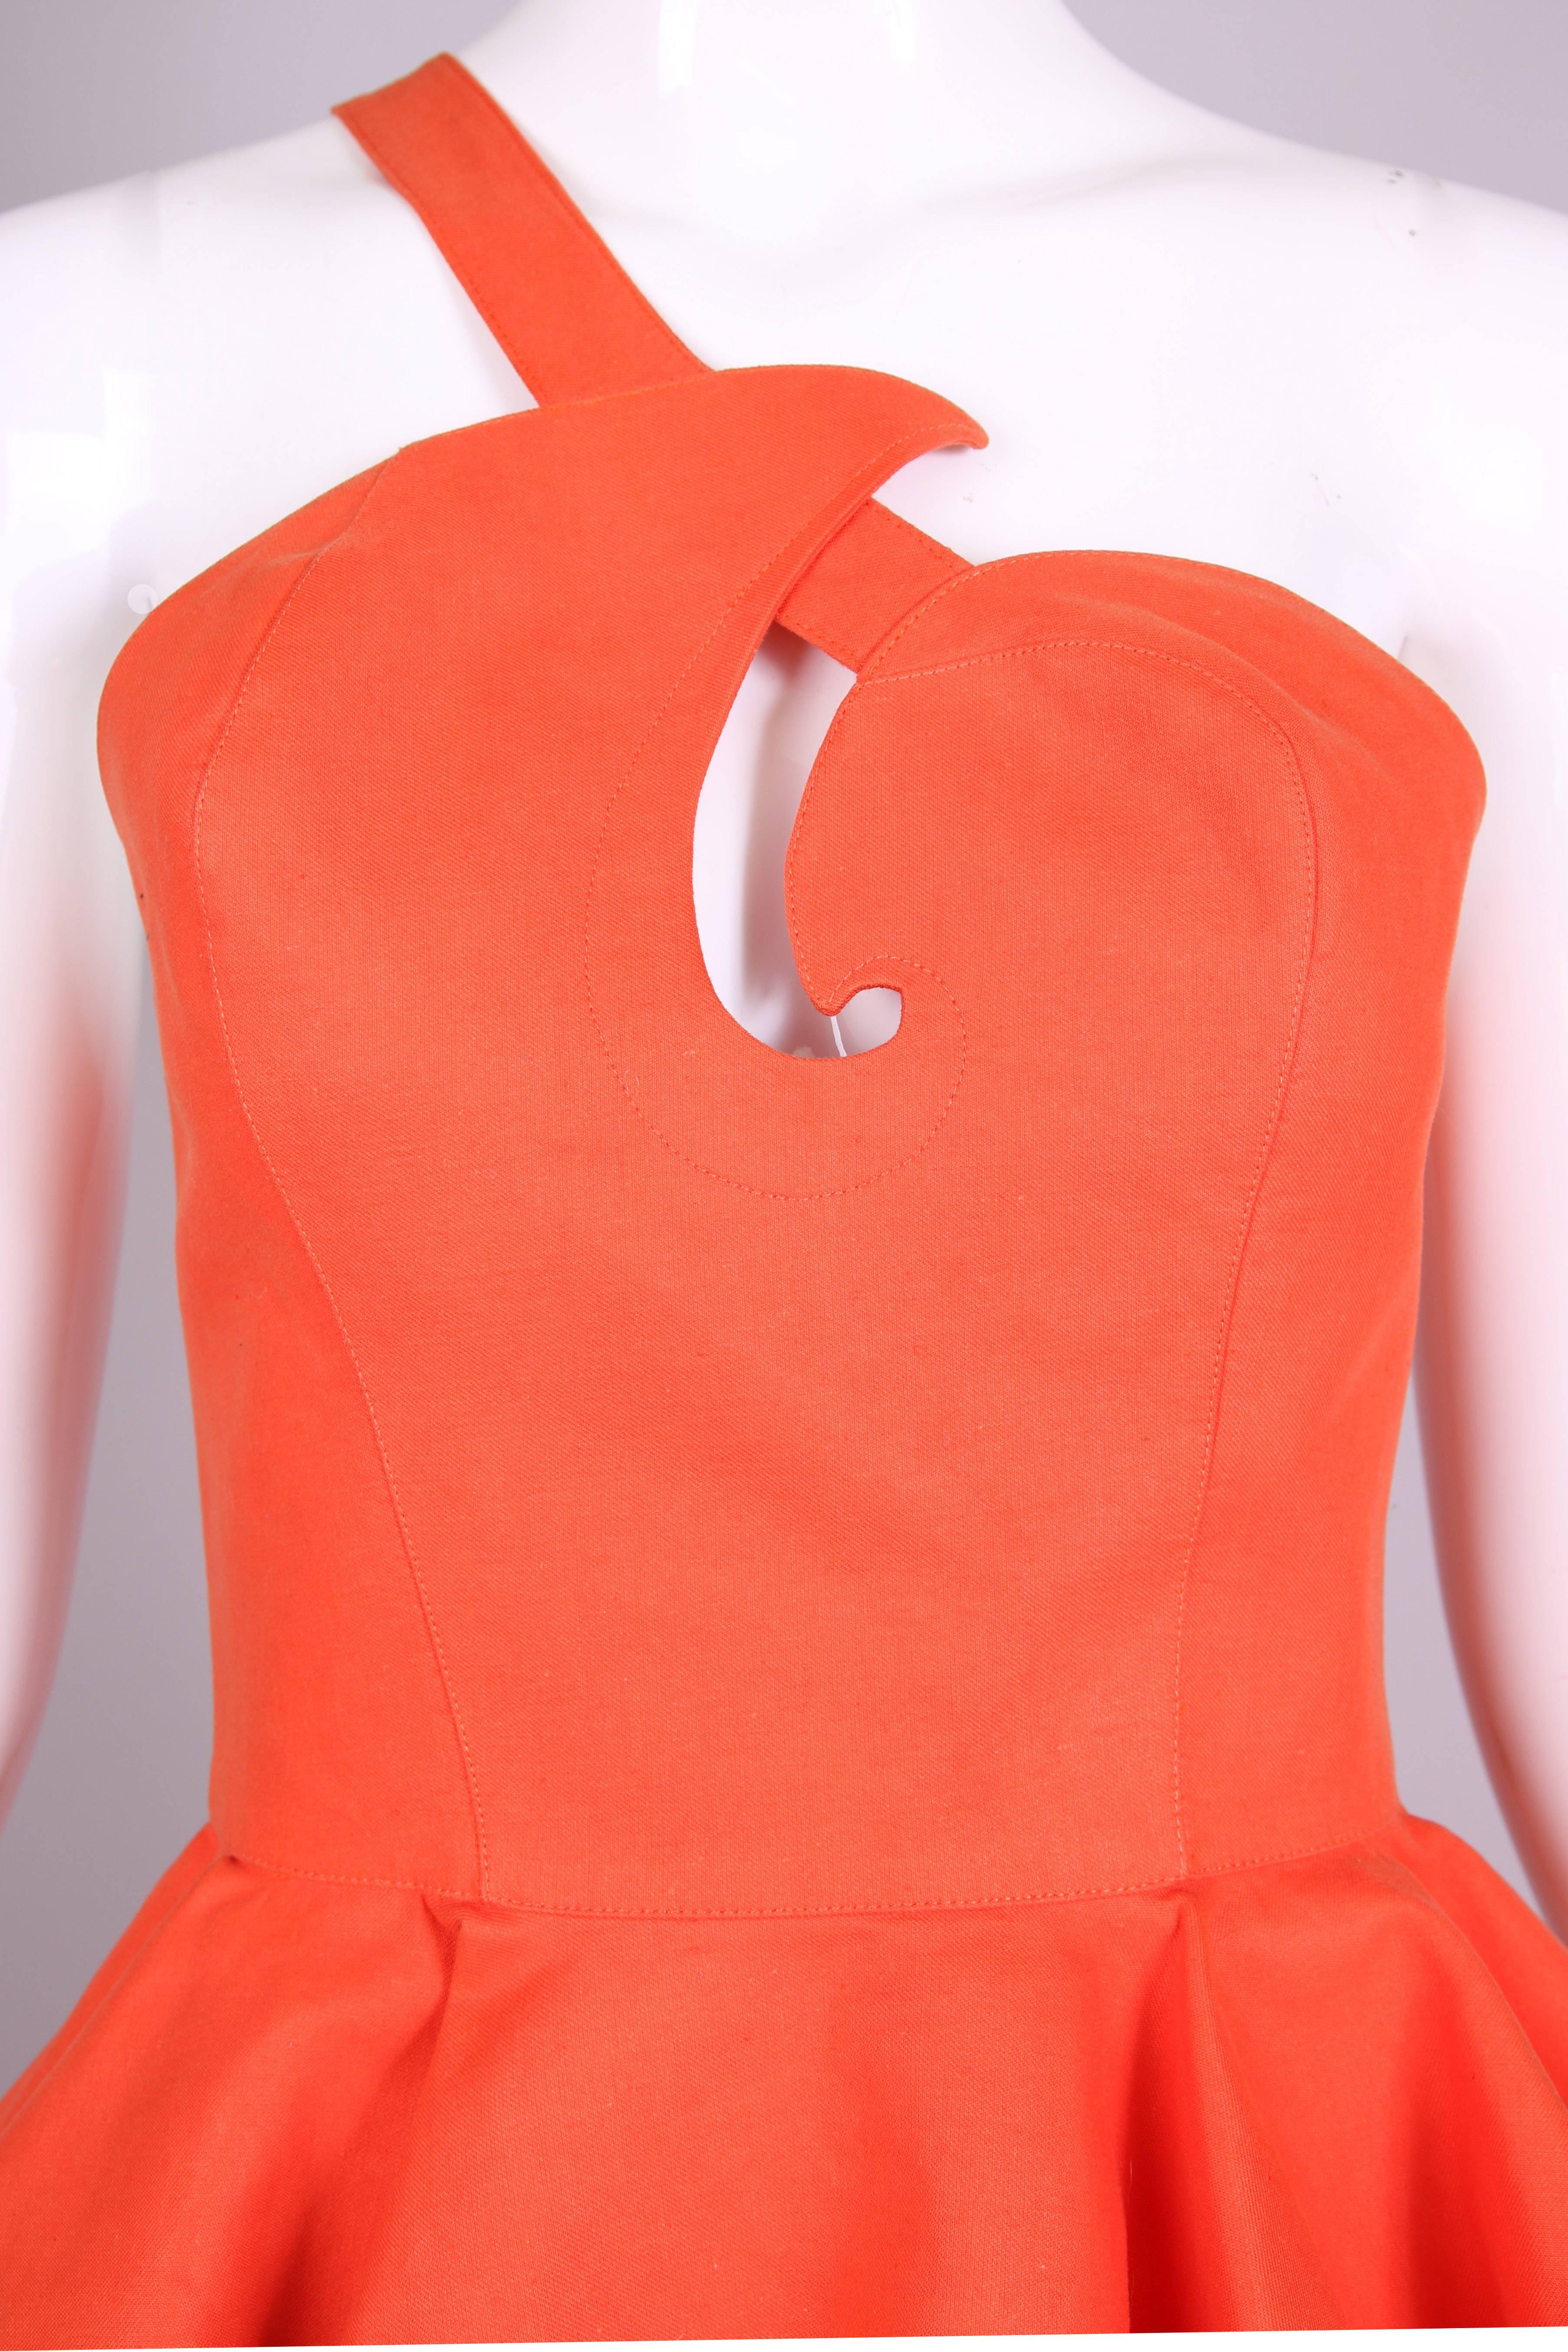 Women's Vintage Thierry Mugler Orange Asymmetric Structured Bustier Top w/Peplum Waist